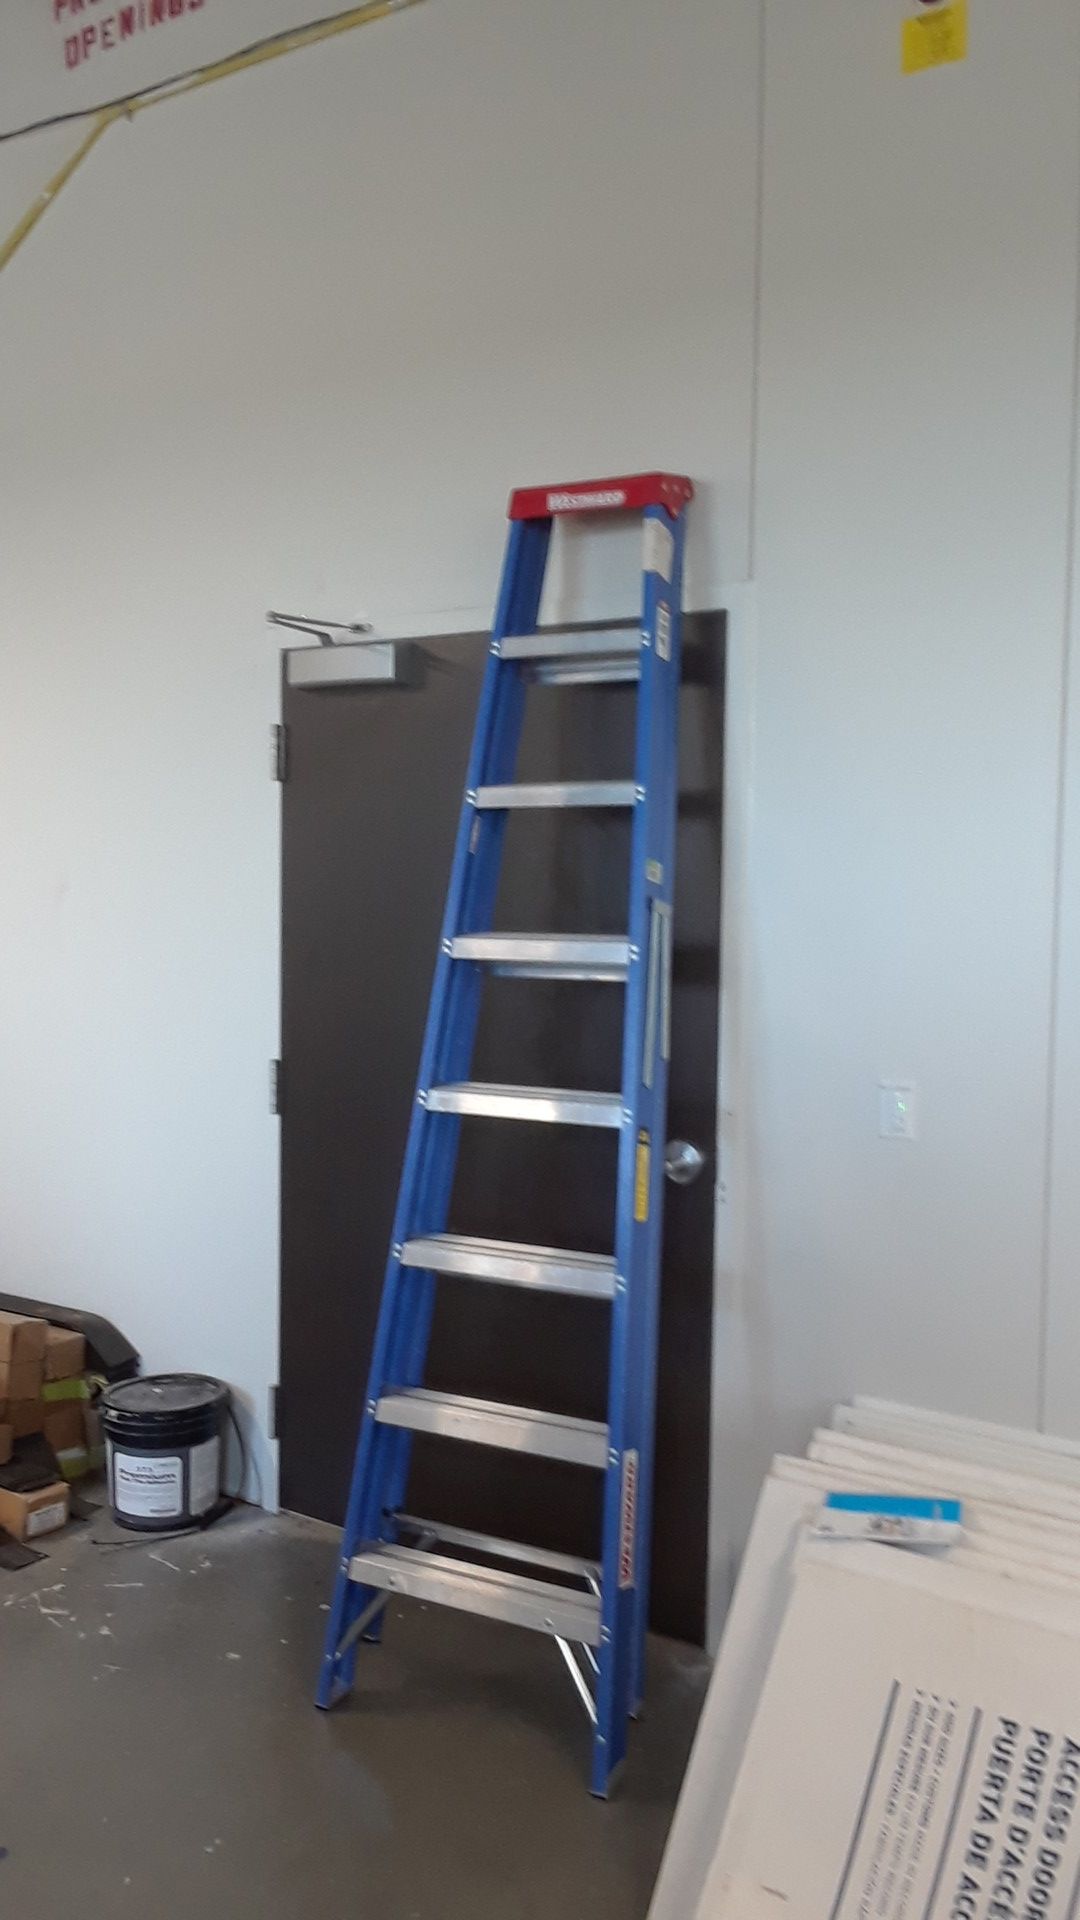 New 8' ladder